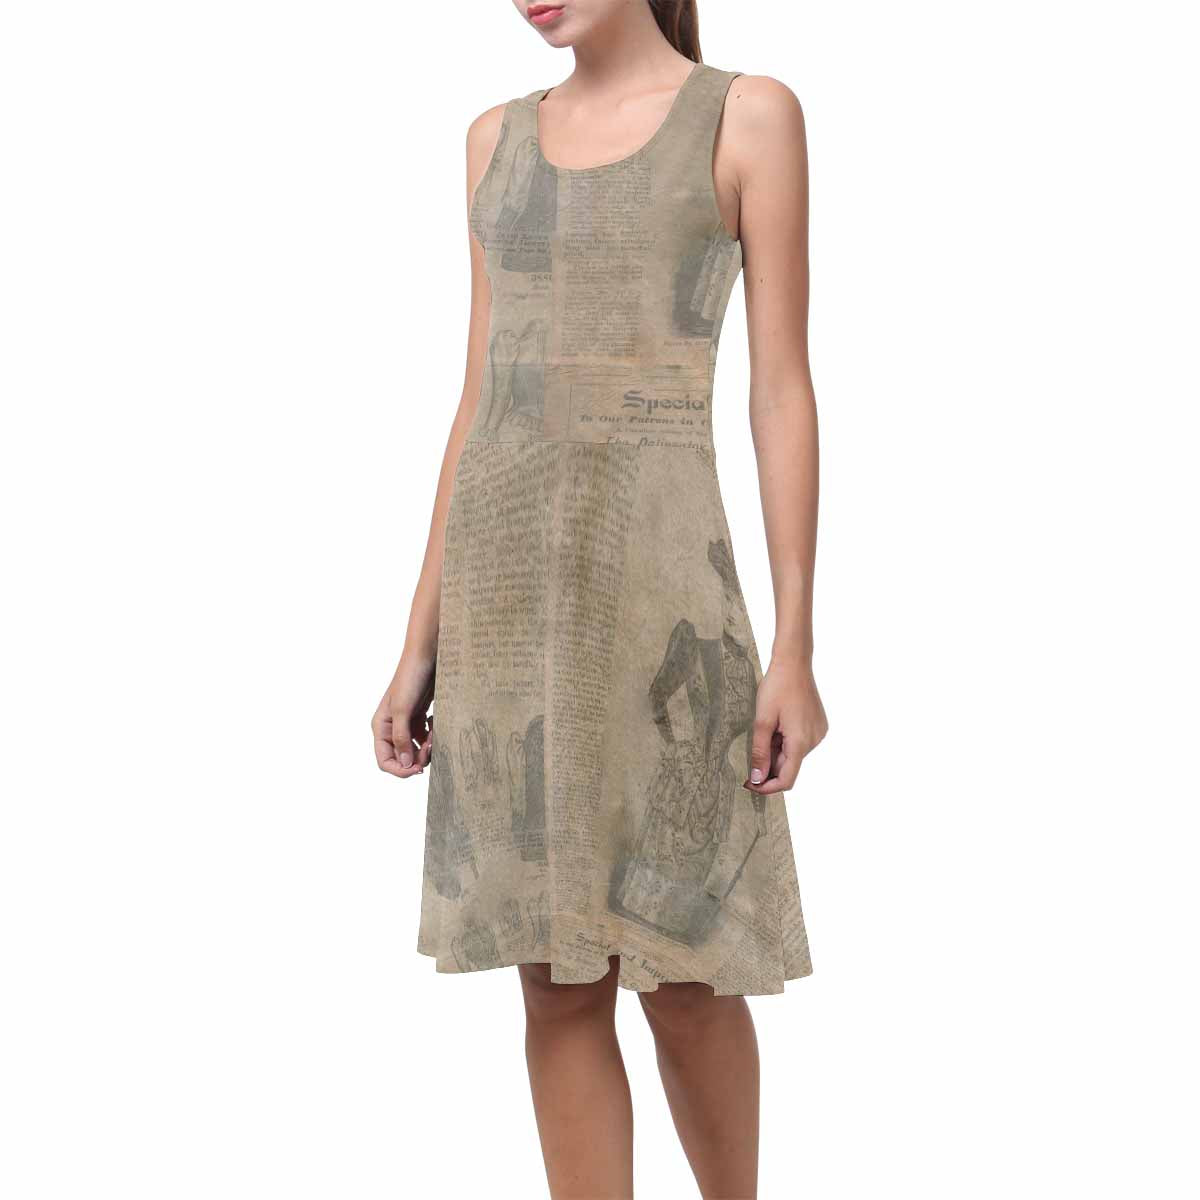 Antique General summer dress, MODEL 09534, design 36